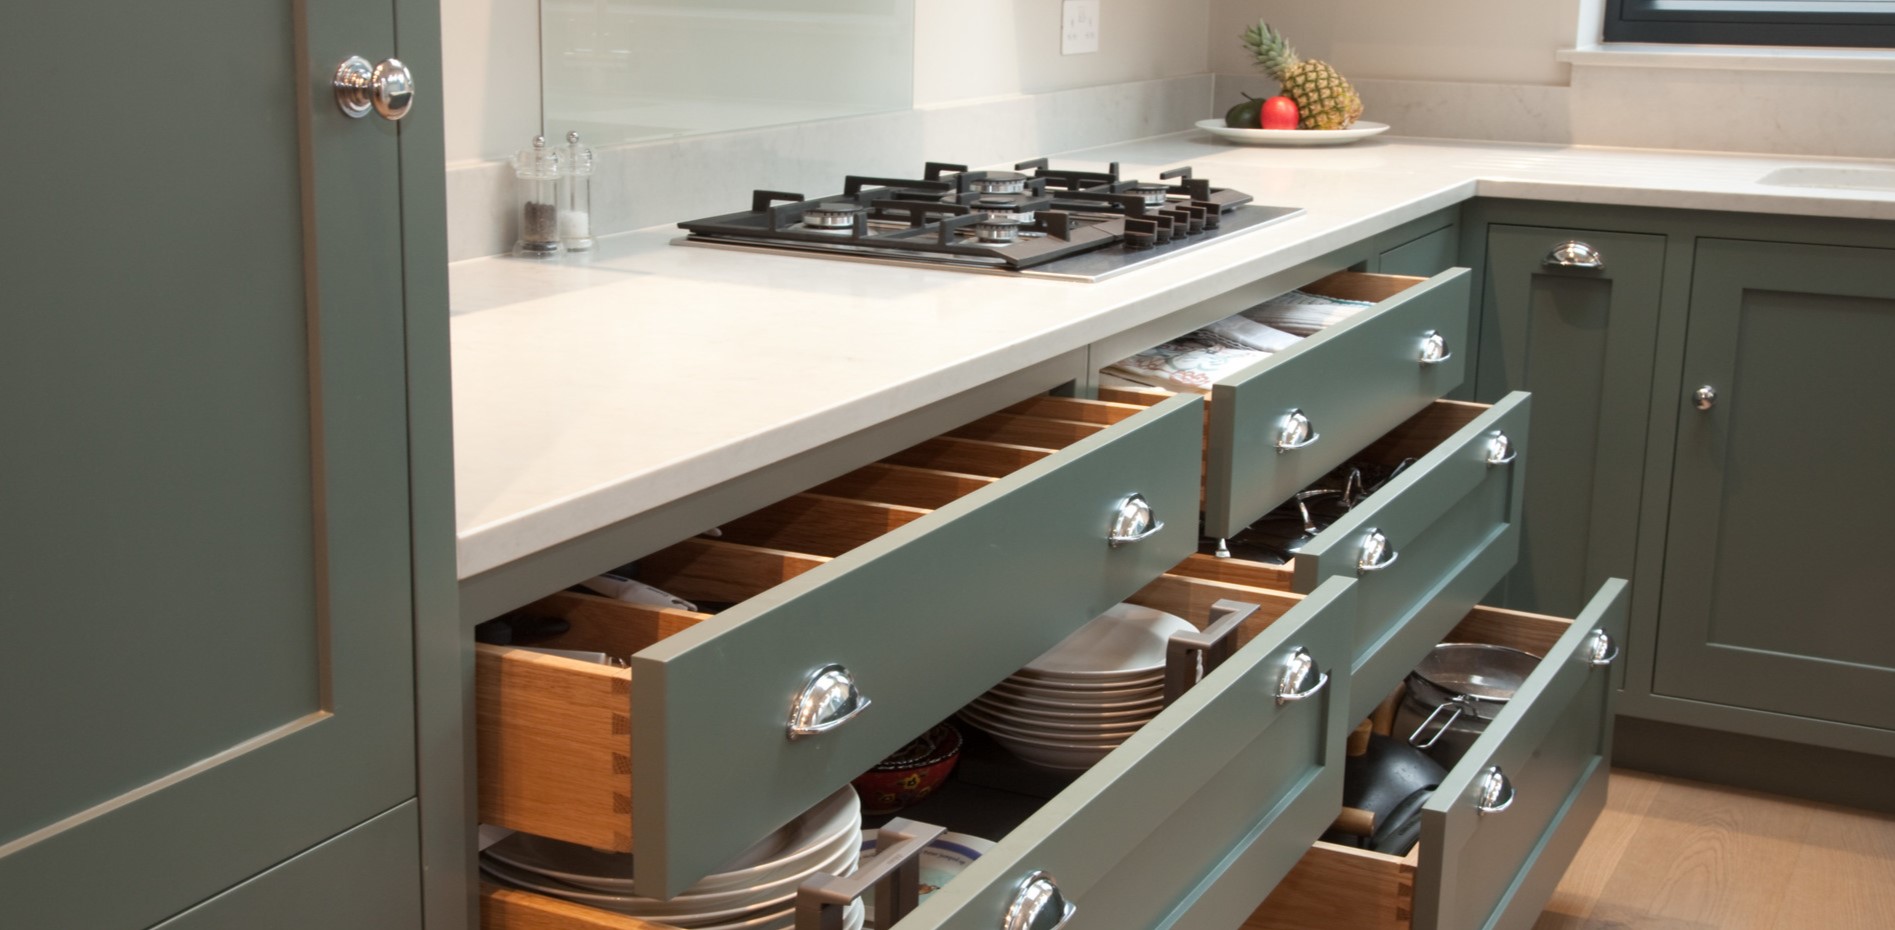 Выдвижные ящики с разделителями помогут удобно хранить посуду и приборы